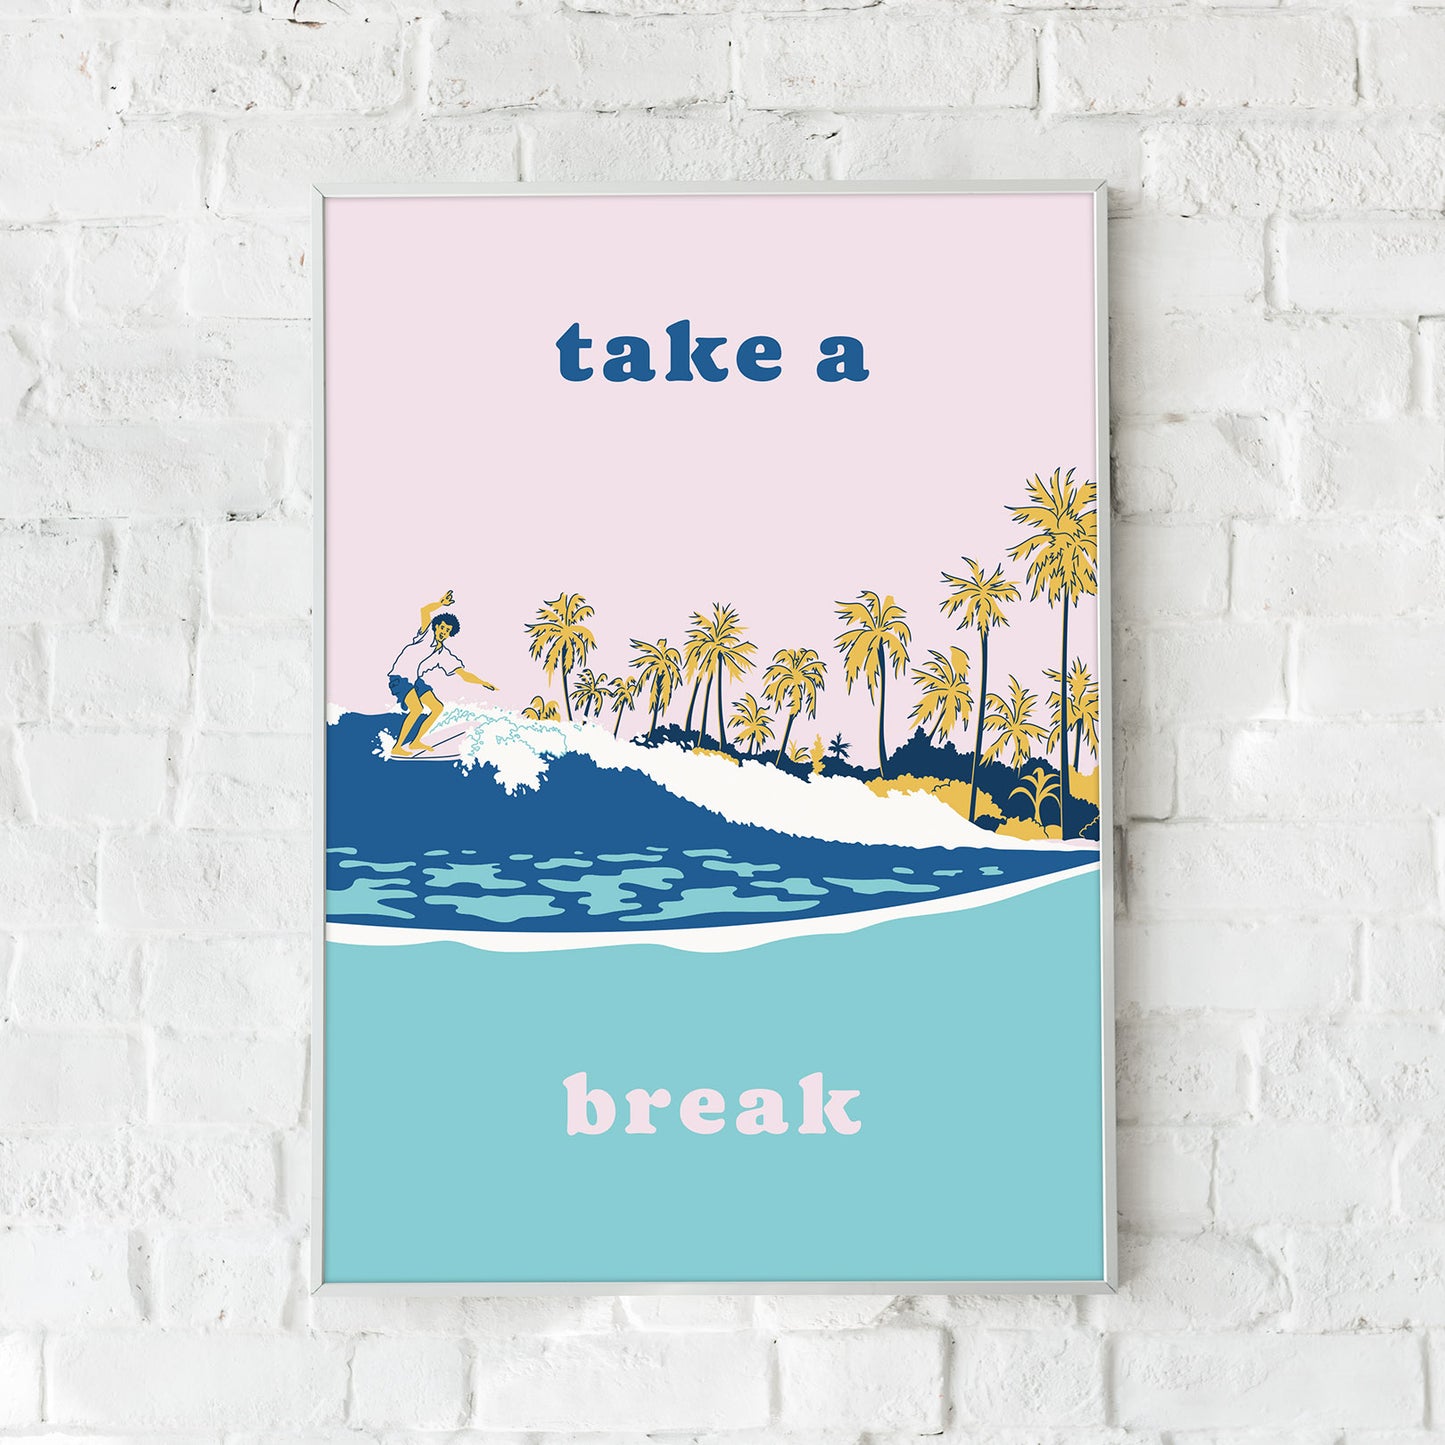 Take a break poster